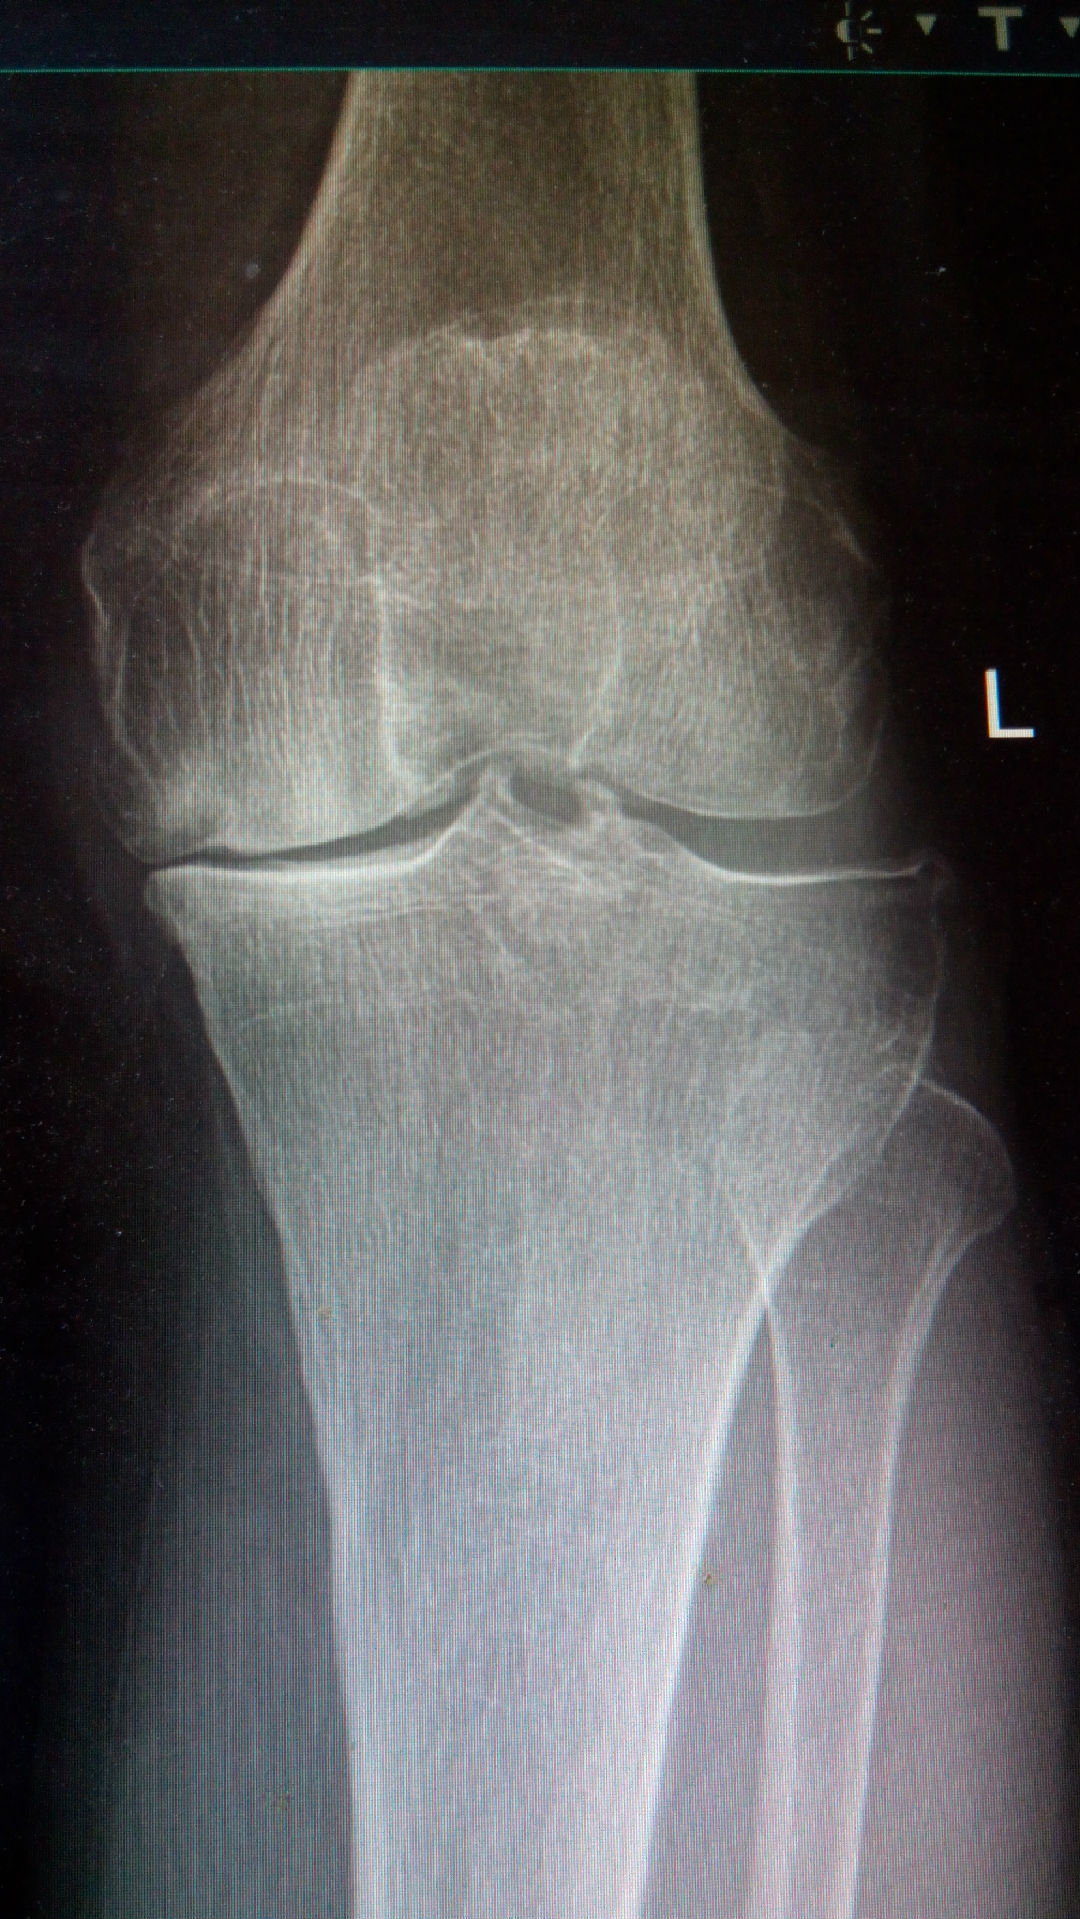 膝关节的结构特点与骨质增生、退型性变。_南通国光中医门诊部